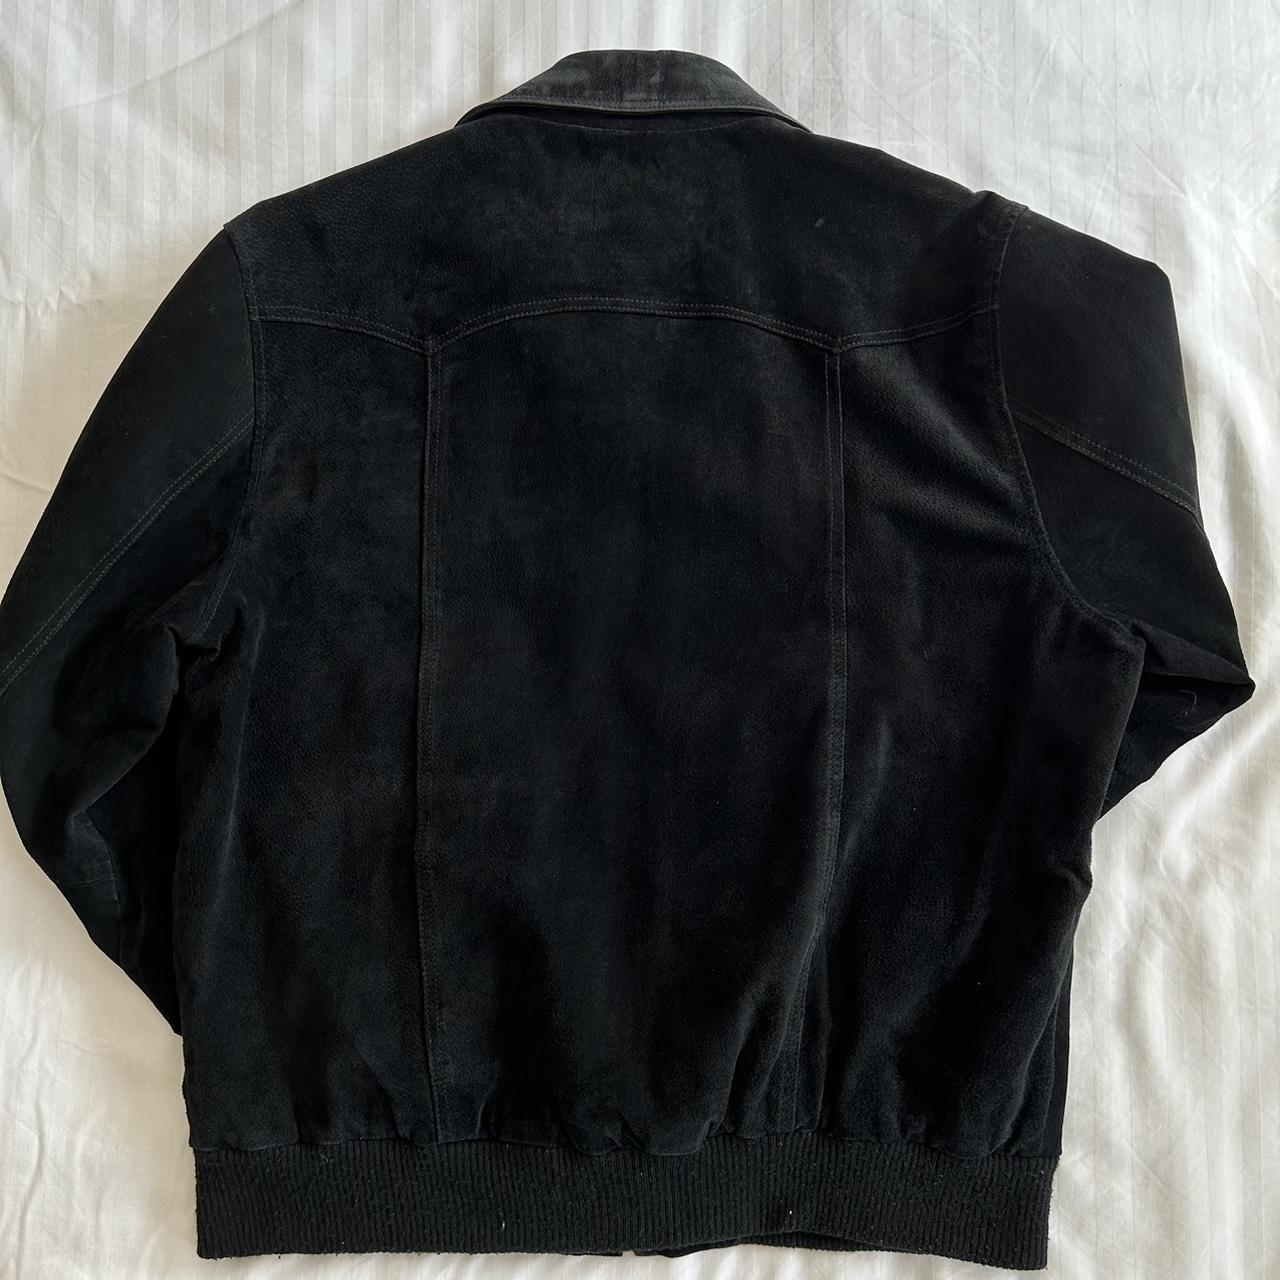 Vintage black suede biker jacket. 4x front... - Depop